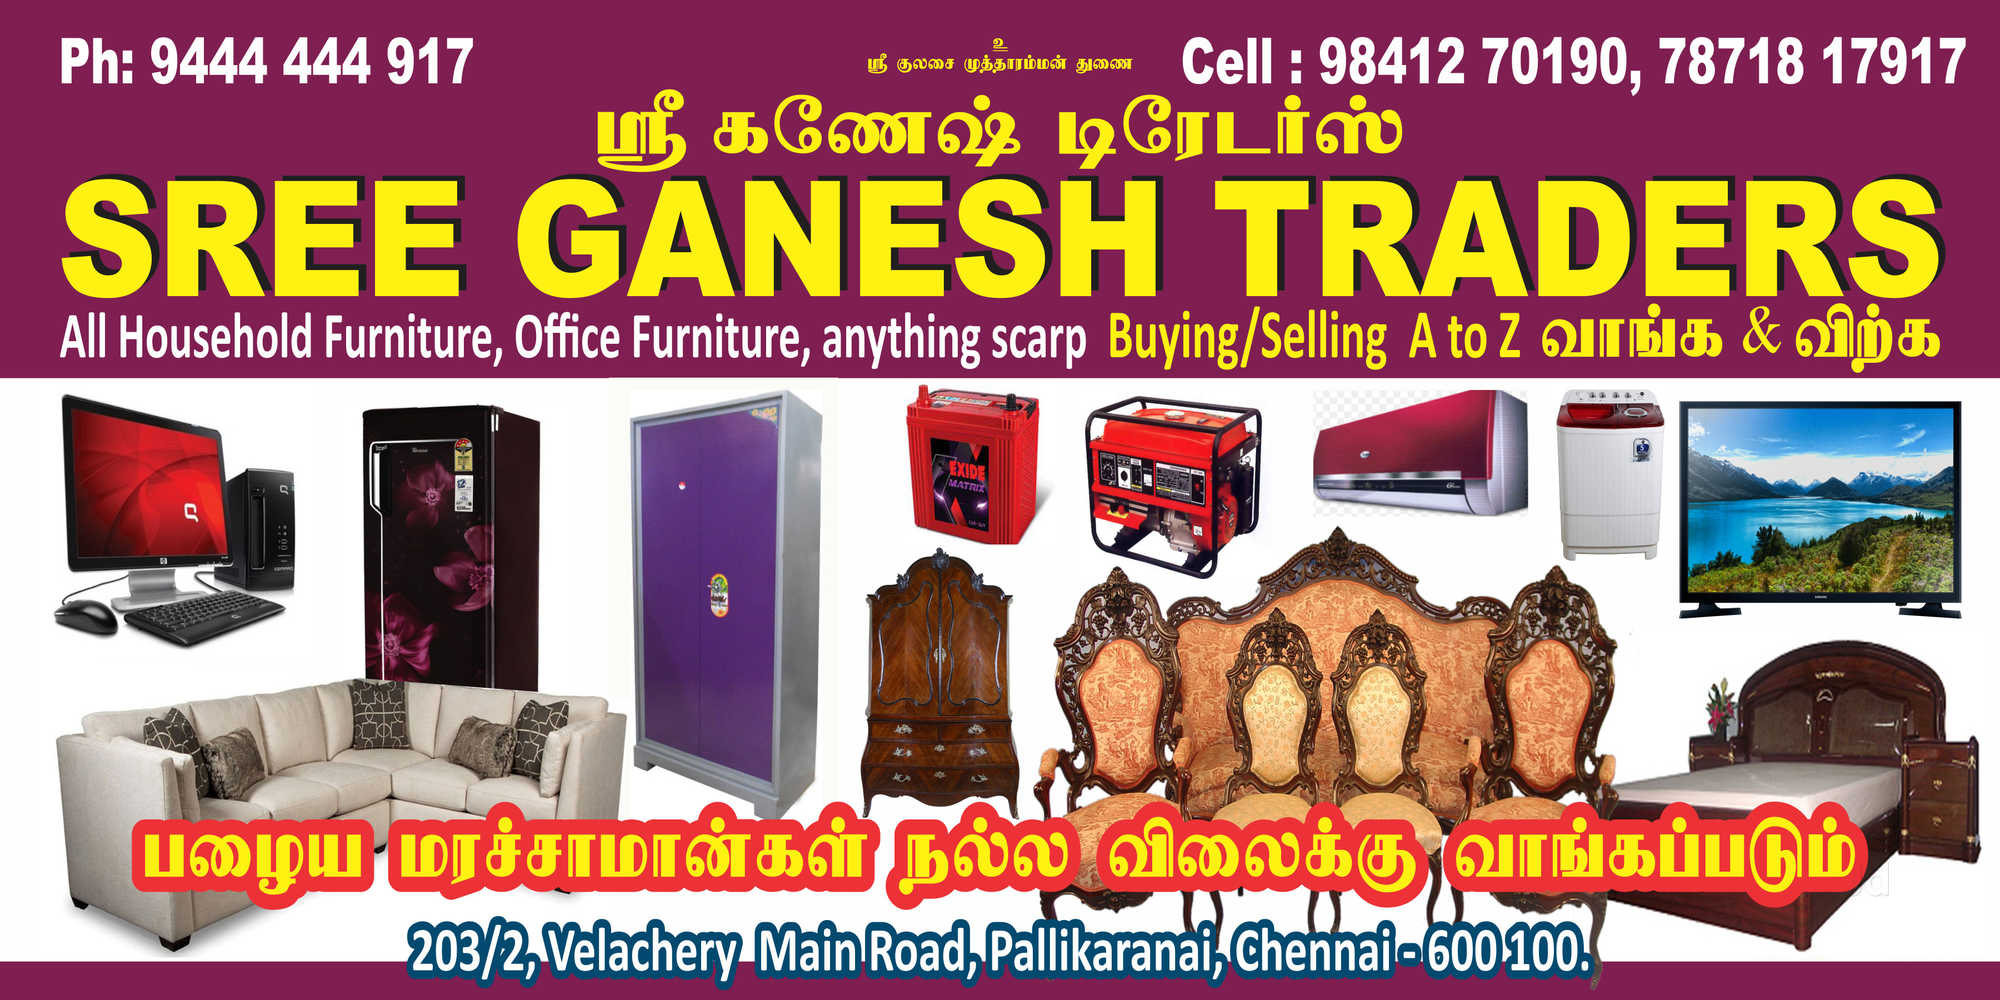 Sree Ganesh Traders Chennai - Image